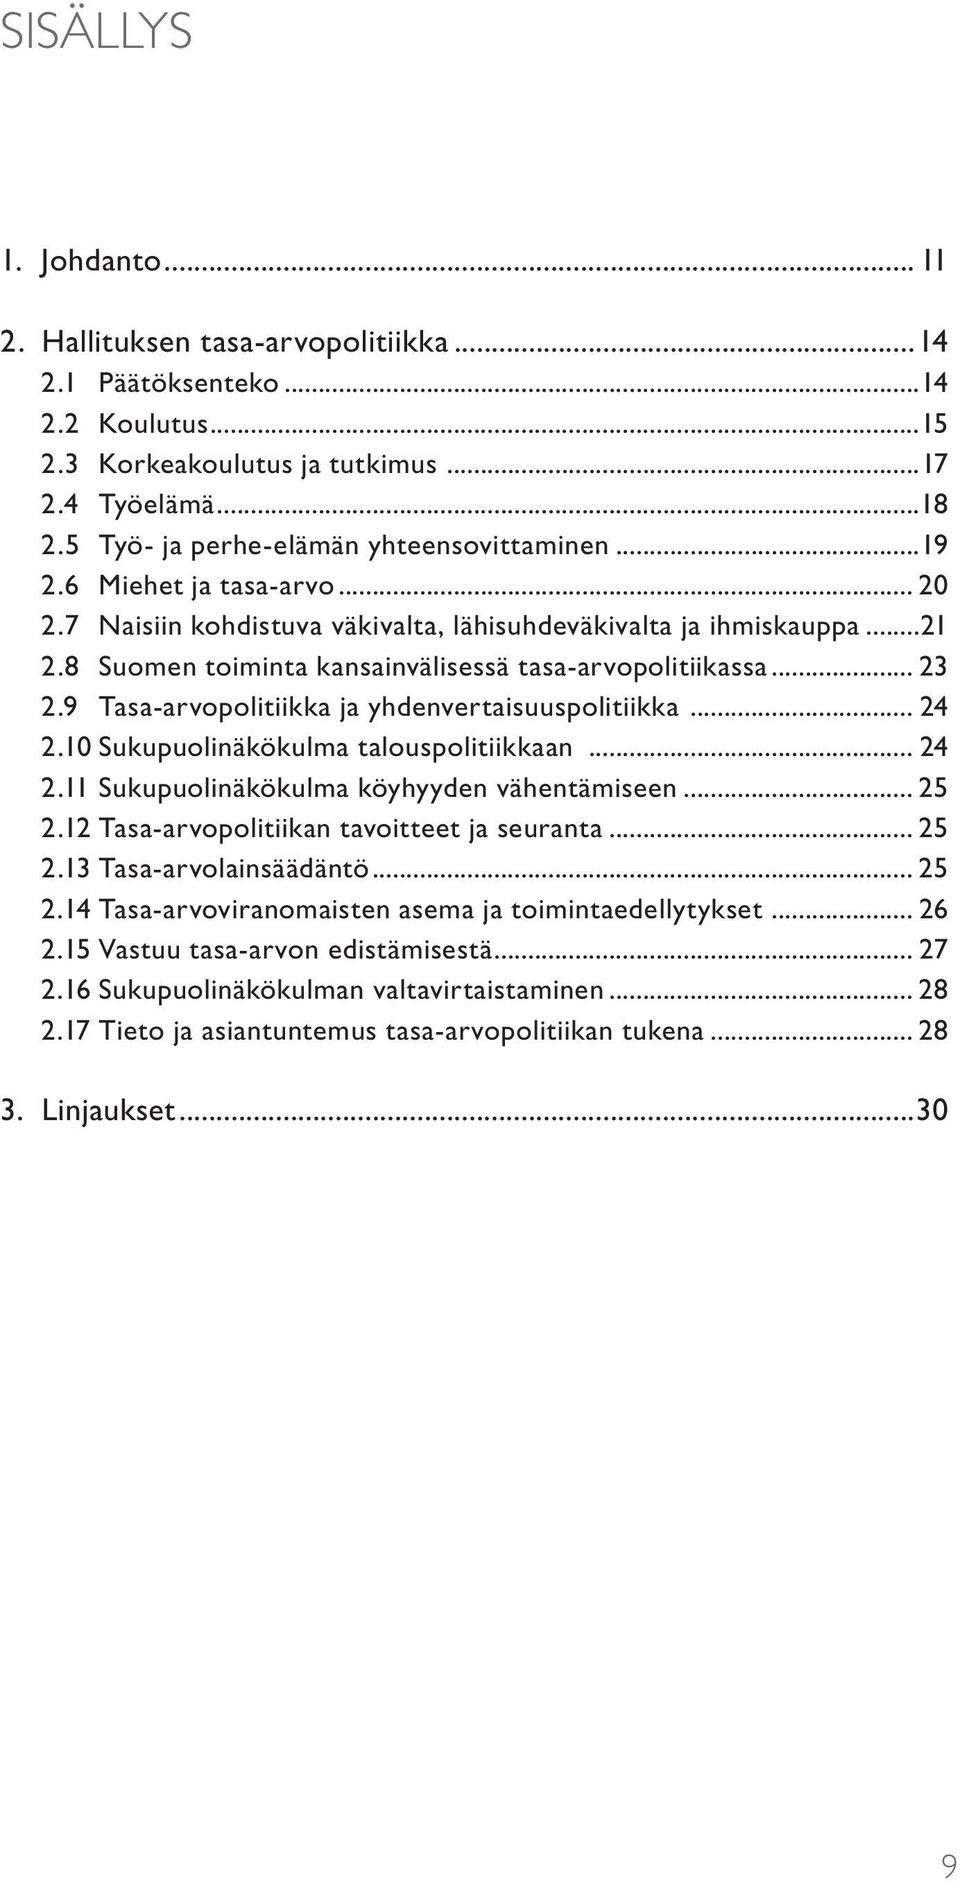 8 Suomen toiminta kansainvälisessä tasa-arvopolitiikassa... 23 2.9 Tasa-arvopolitiikka ja yhdenvertaisuuspolitiikka... 24 2.10 Sukupuolinäkökulma talouspolitiikkaan... 24 2.11 Sukupuolinäkökulma köyhyyden vähentämiseen.